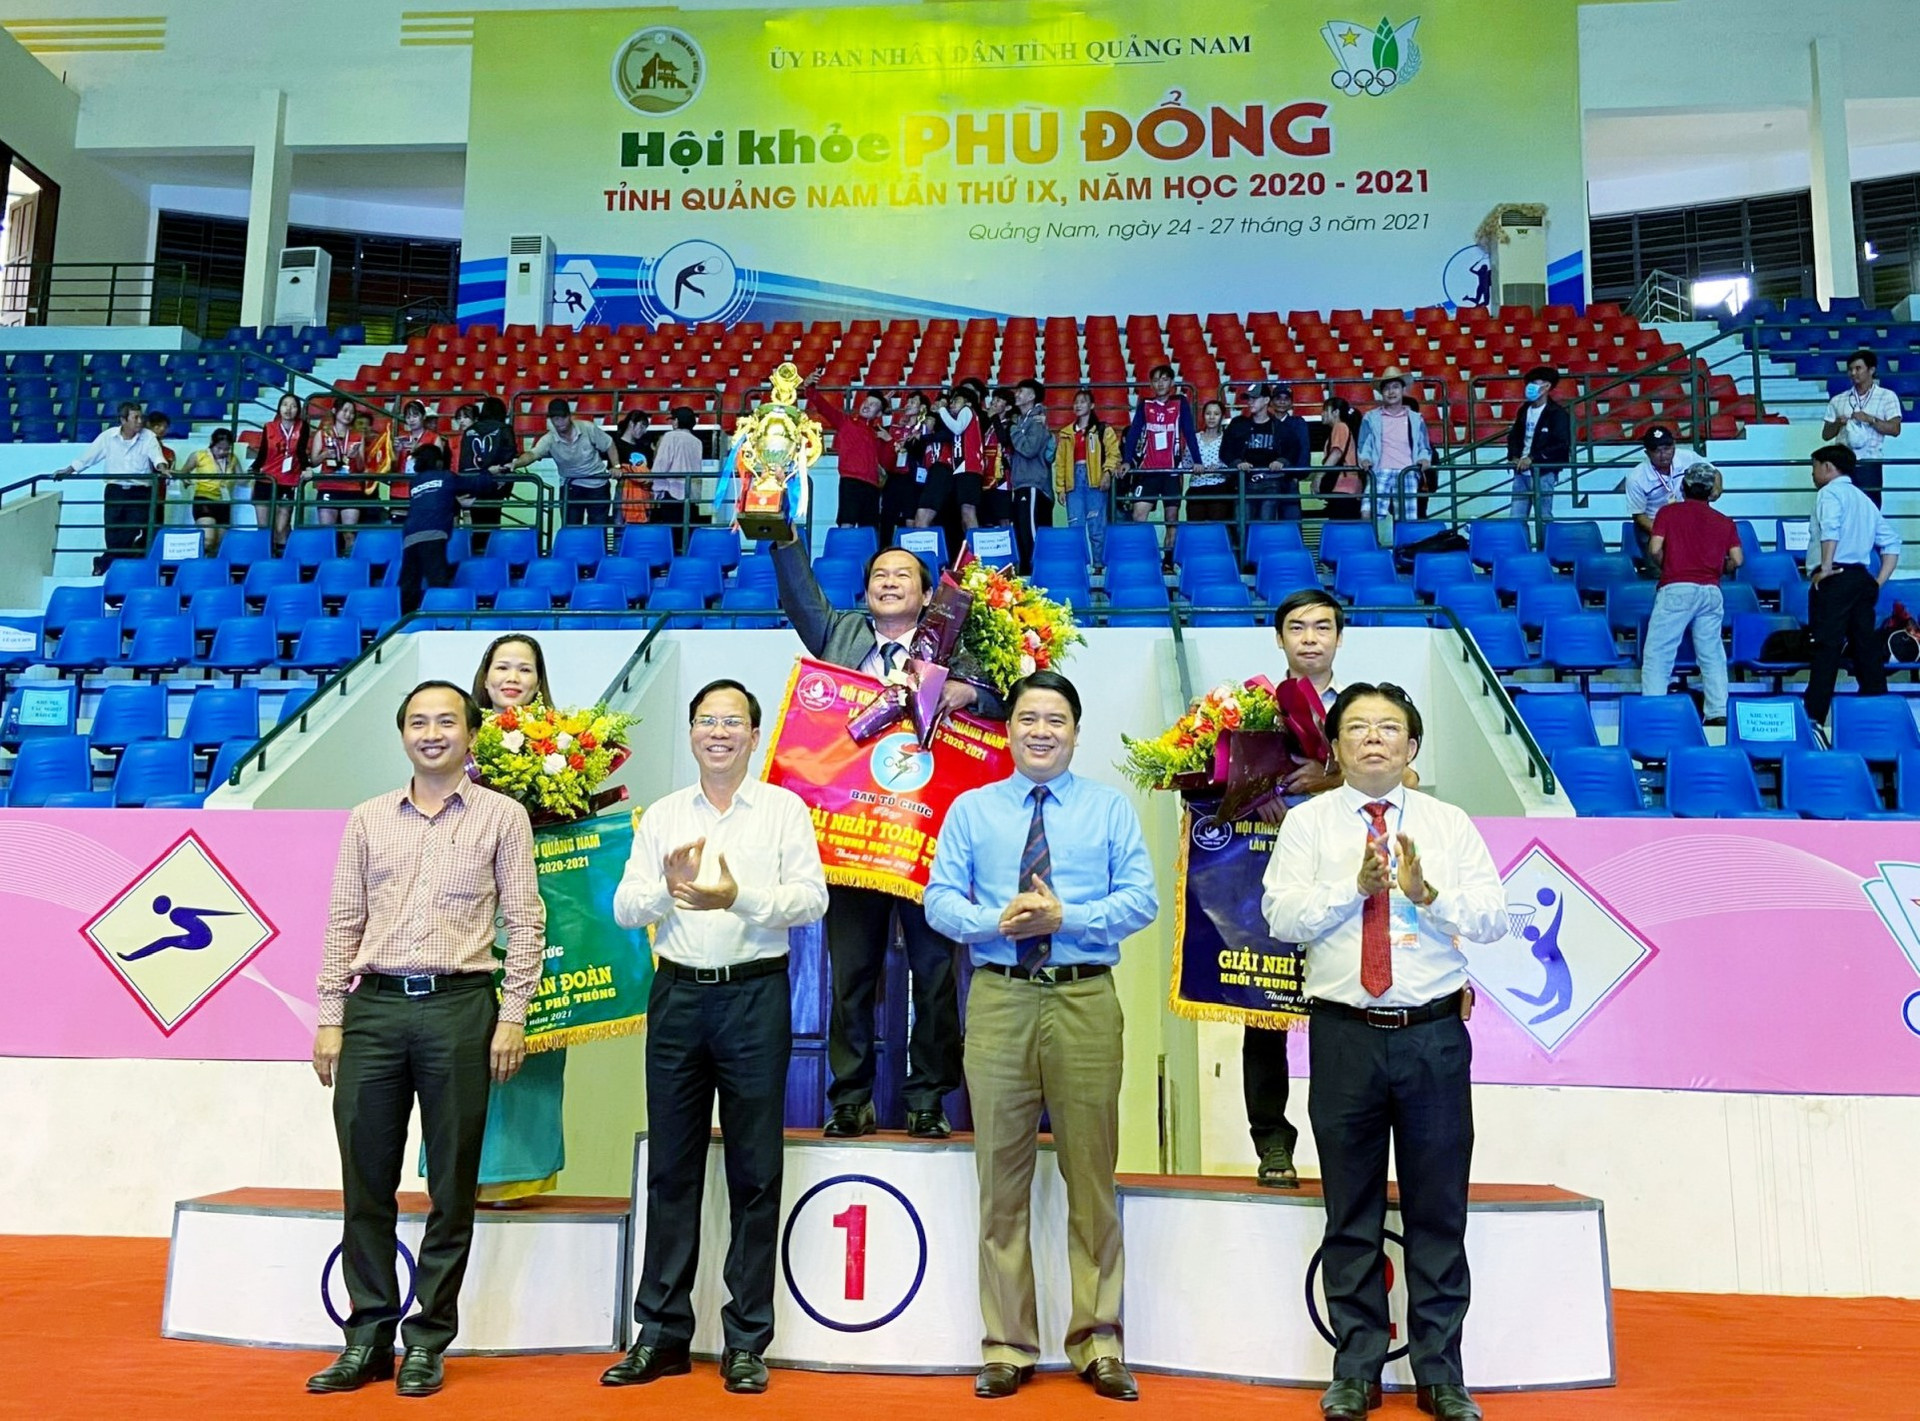 Phó Chủ tịch UBND tỉnh Trần Văn Tân trao cúp đoạt giải nhất toàn đoàn Hội khỏe Phù Đổng tỉnh năm học 2020 - 2021 cho đại diện Trường THPT chuyên Nguyễn Bỉnh Khiêm. Ảnh: Đ.T